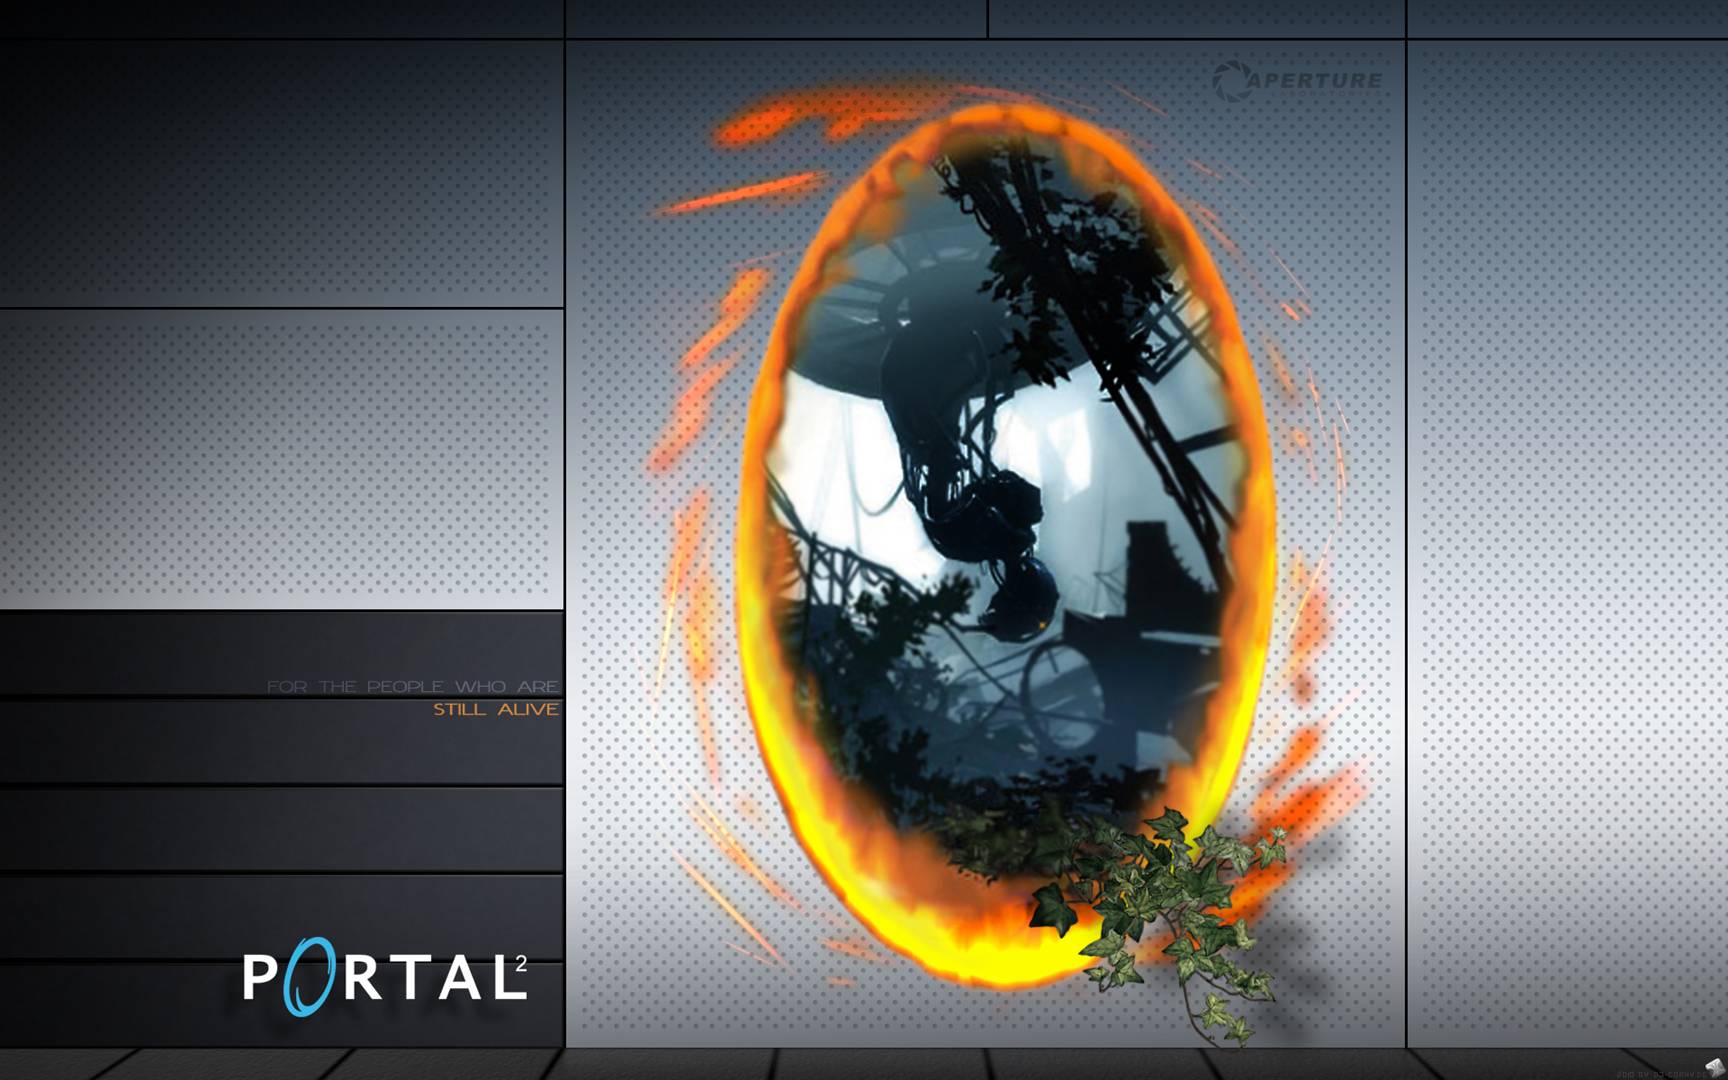 Portal Wallpaper In Full 1080p HD Gamingbolt Video Game